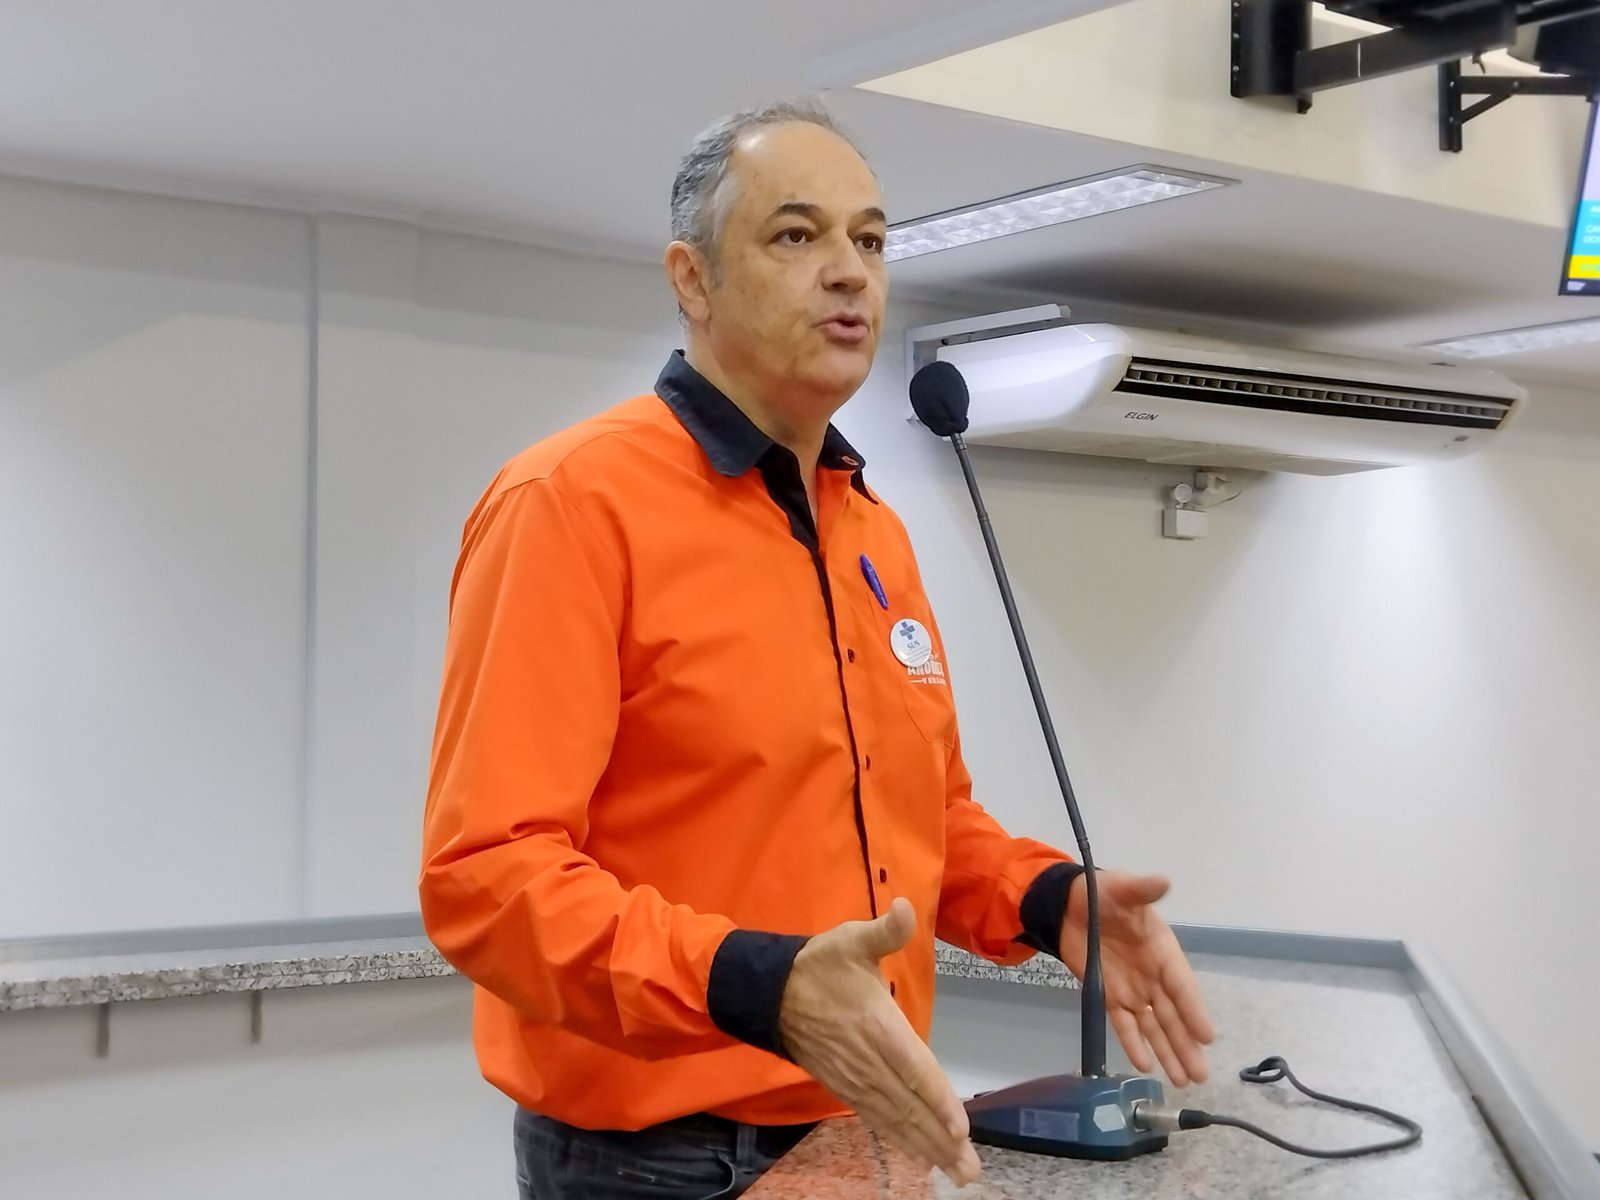 Vereador Professor André Luis defende Campo Grande como Área Livre de Agrotóxico